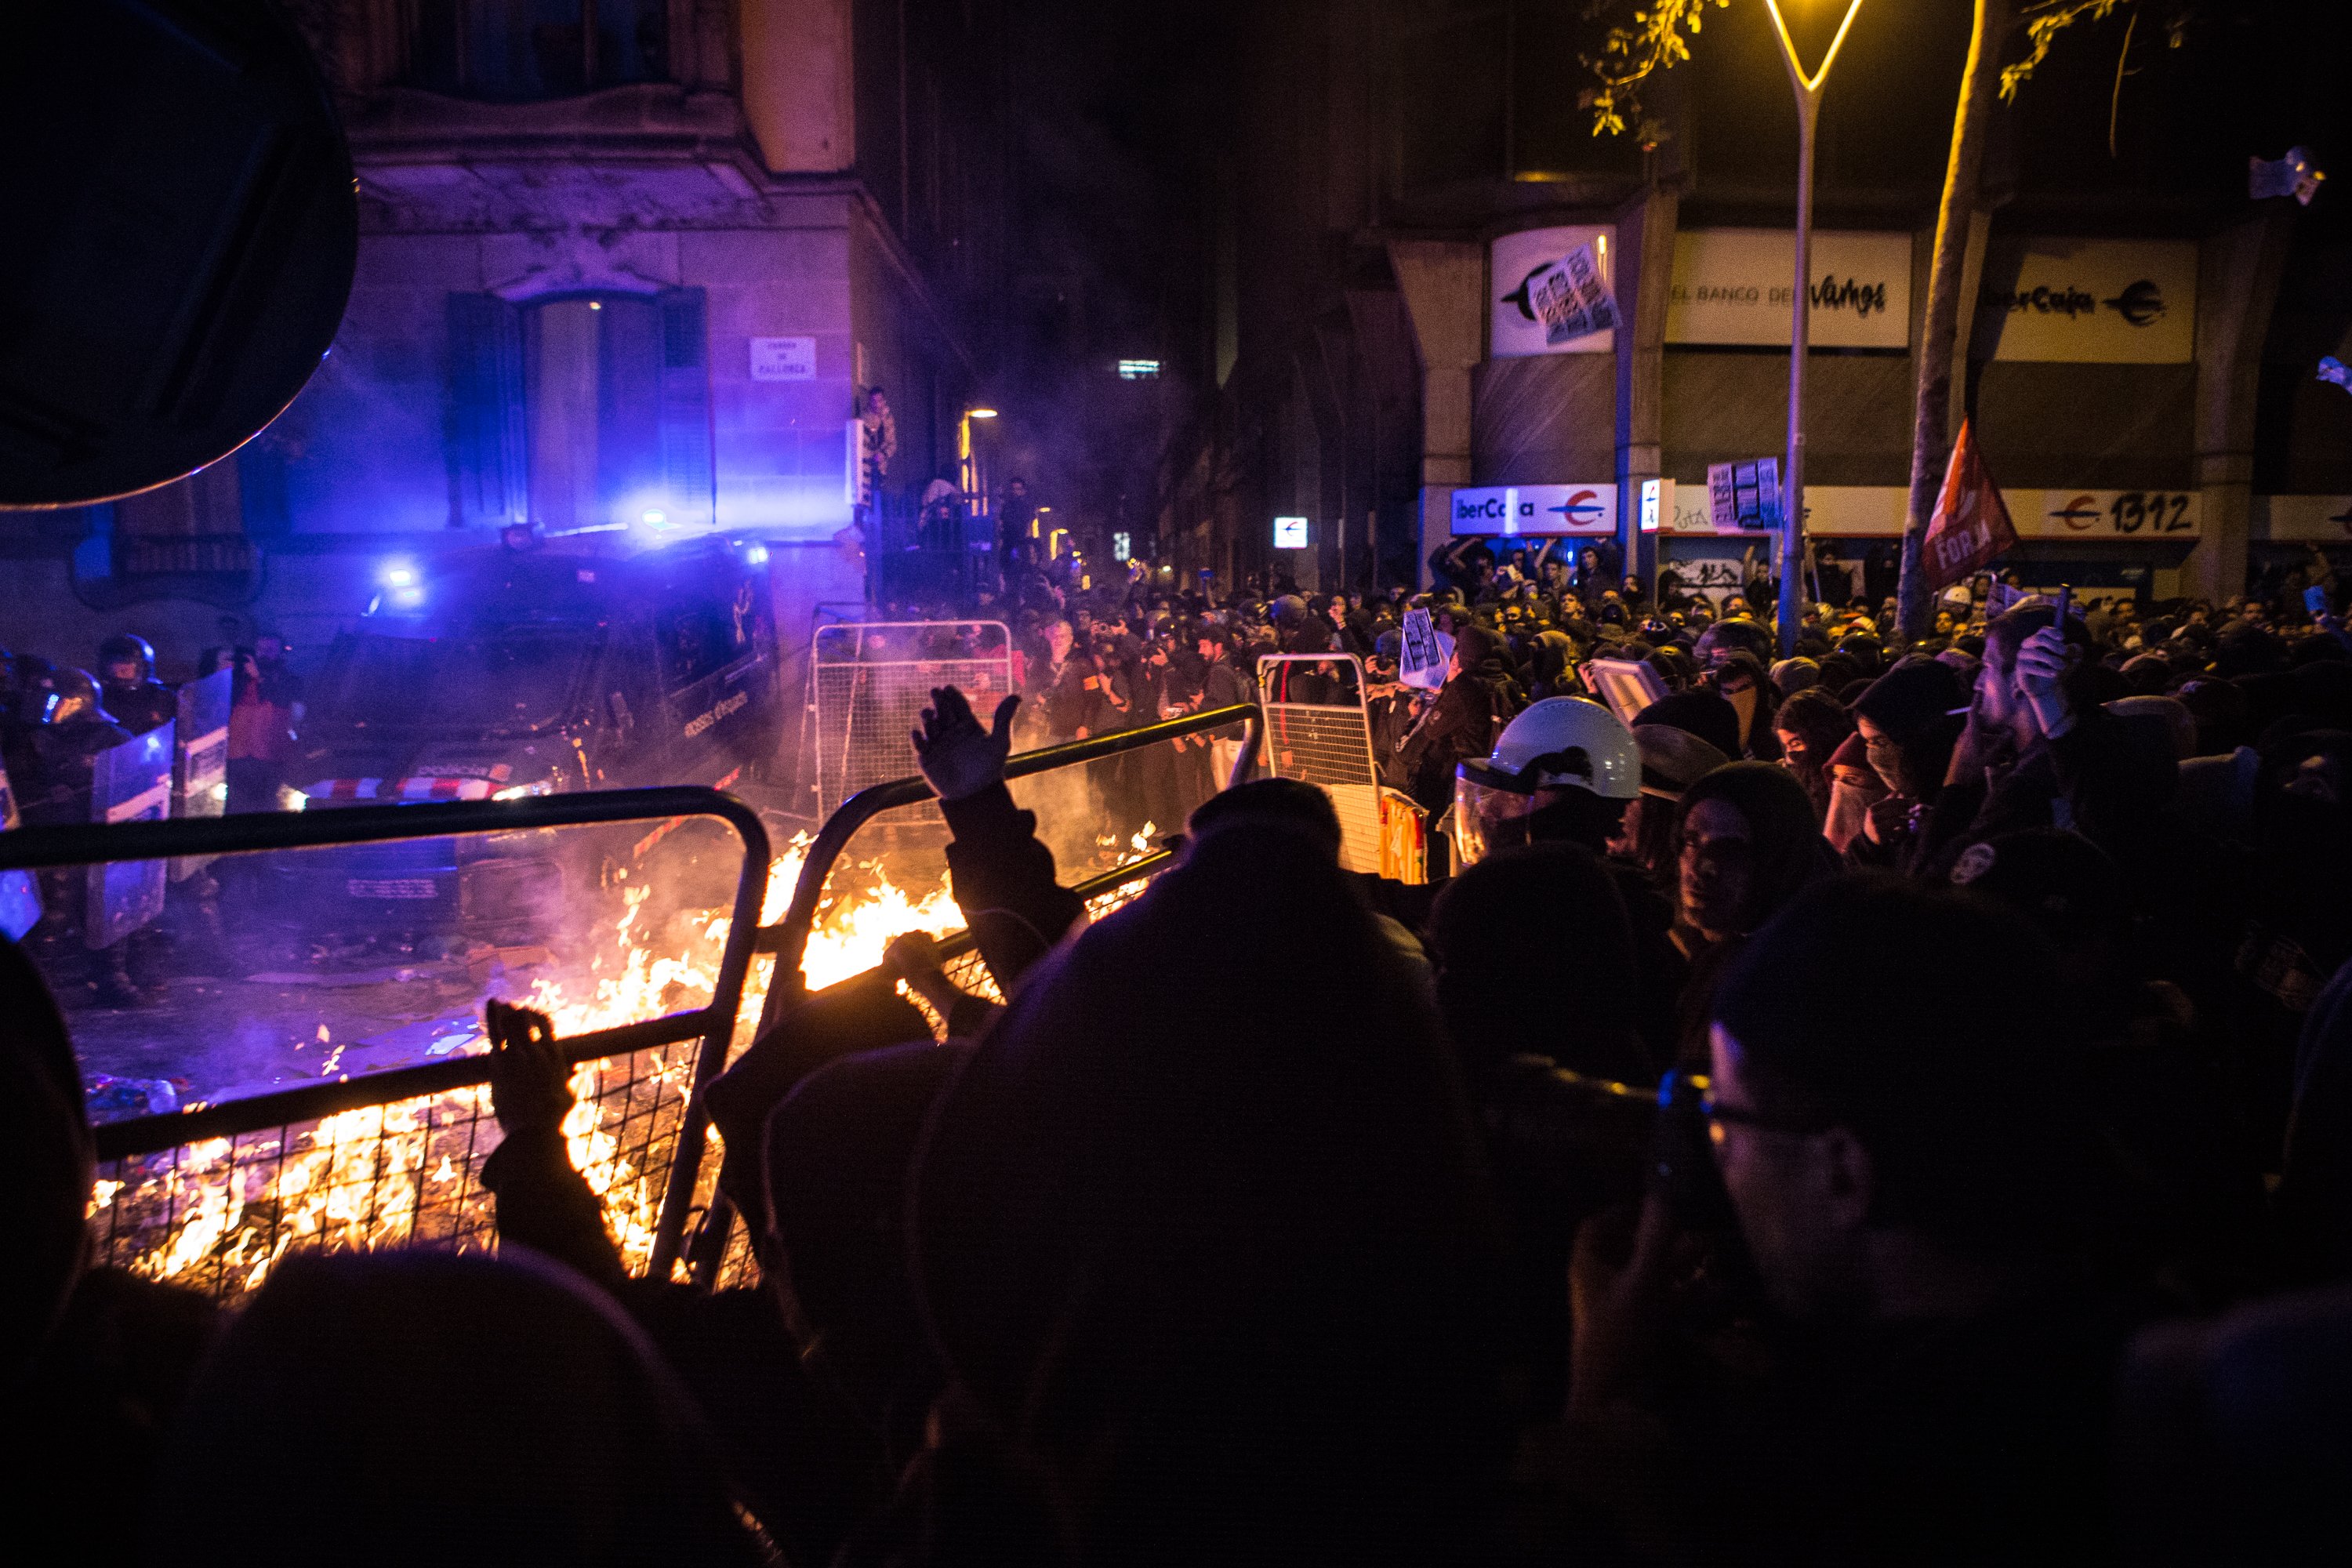 Infiltrats policials van provocar violència a la delegació del govern espanyol, segons 'Público'